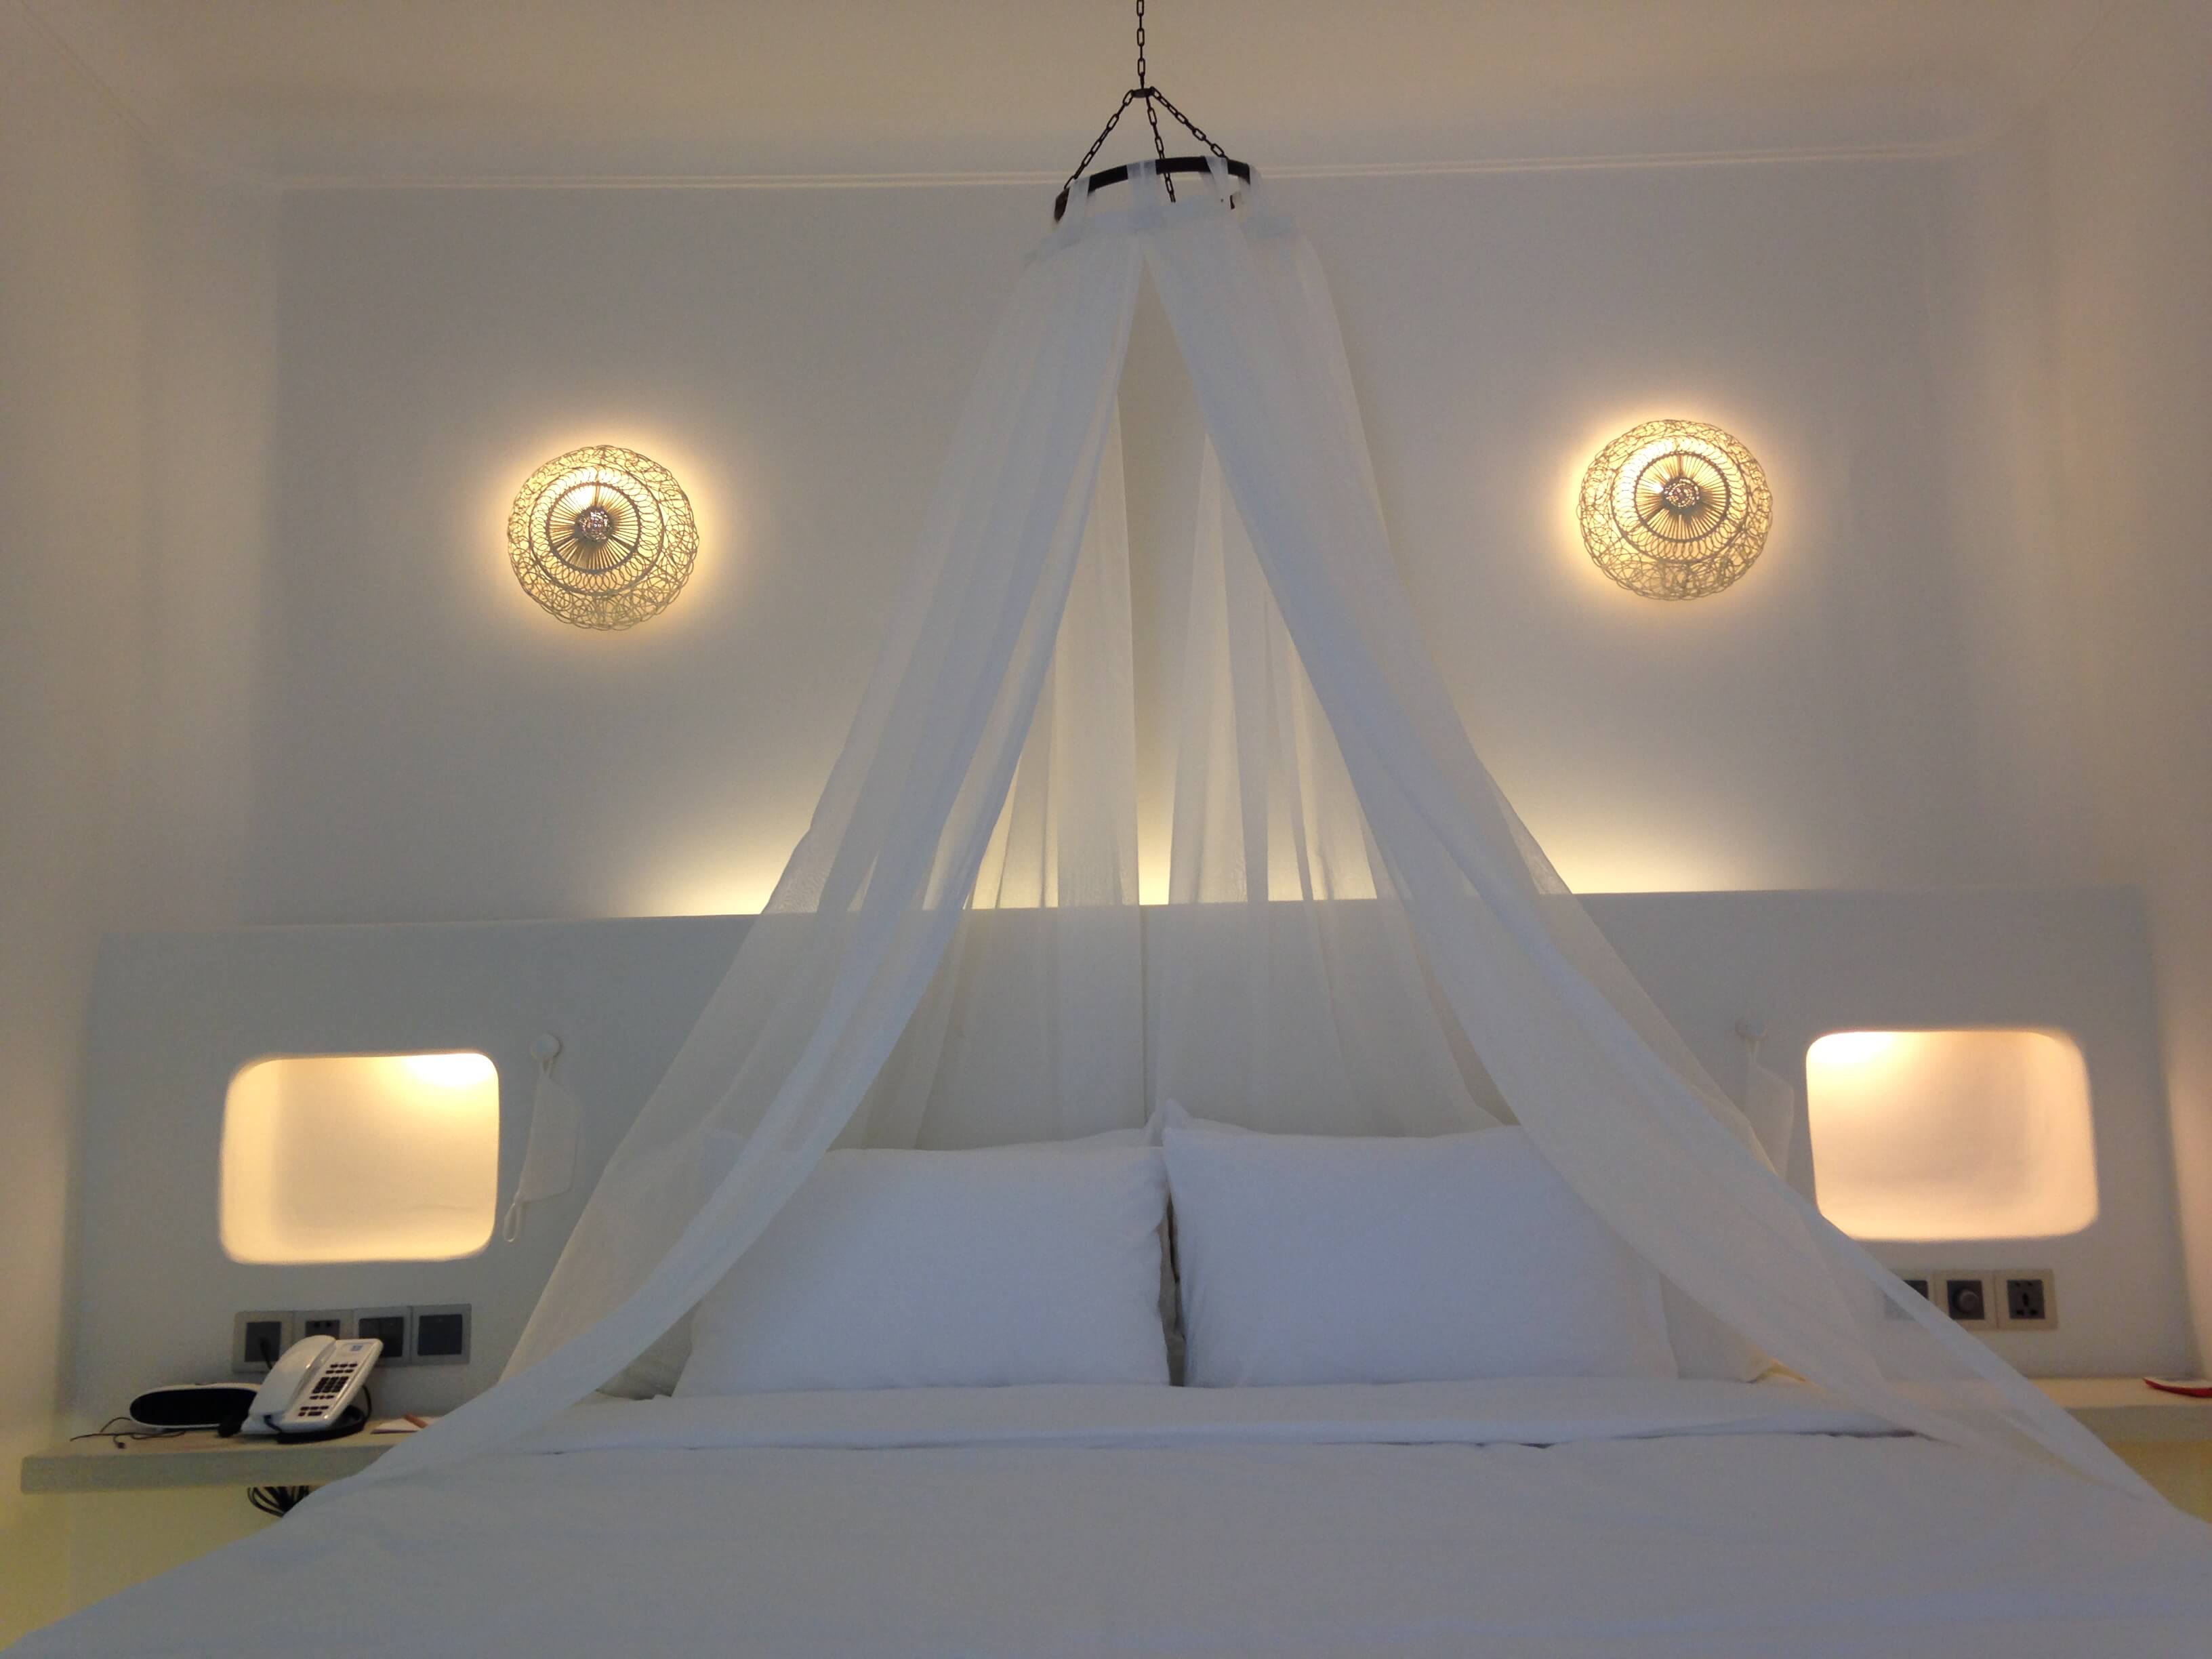 Đèn áp tường rổ mây tròn của Đèn Xinh được trang trí trong phòng ngủ của công trình Alma Long Hải Room, tạo cảm giác ấm áp, thoải mái